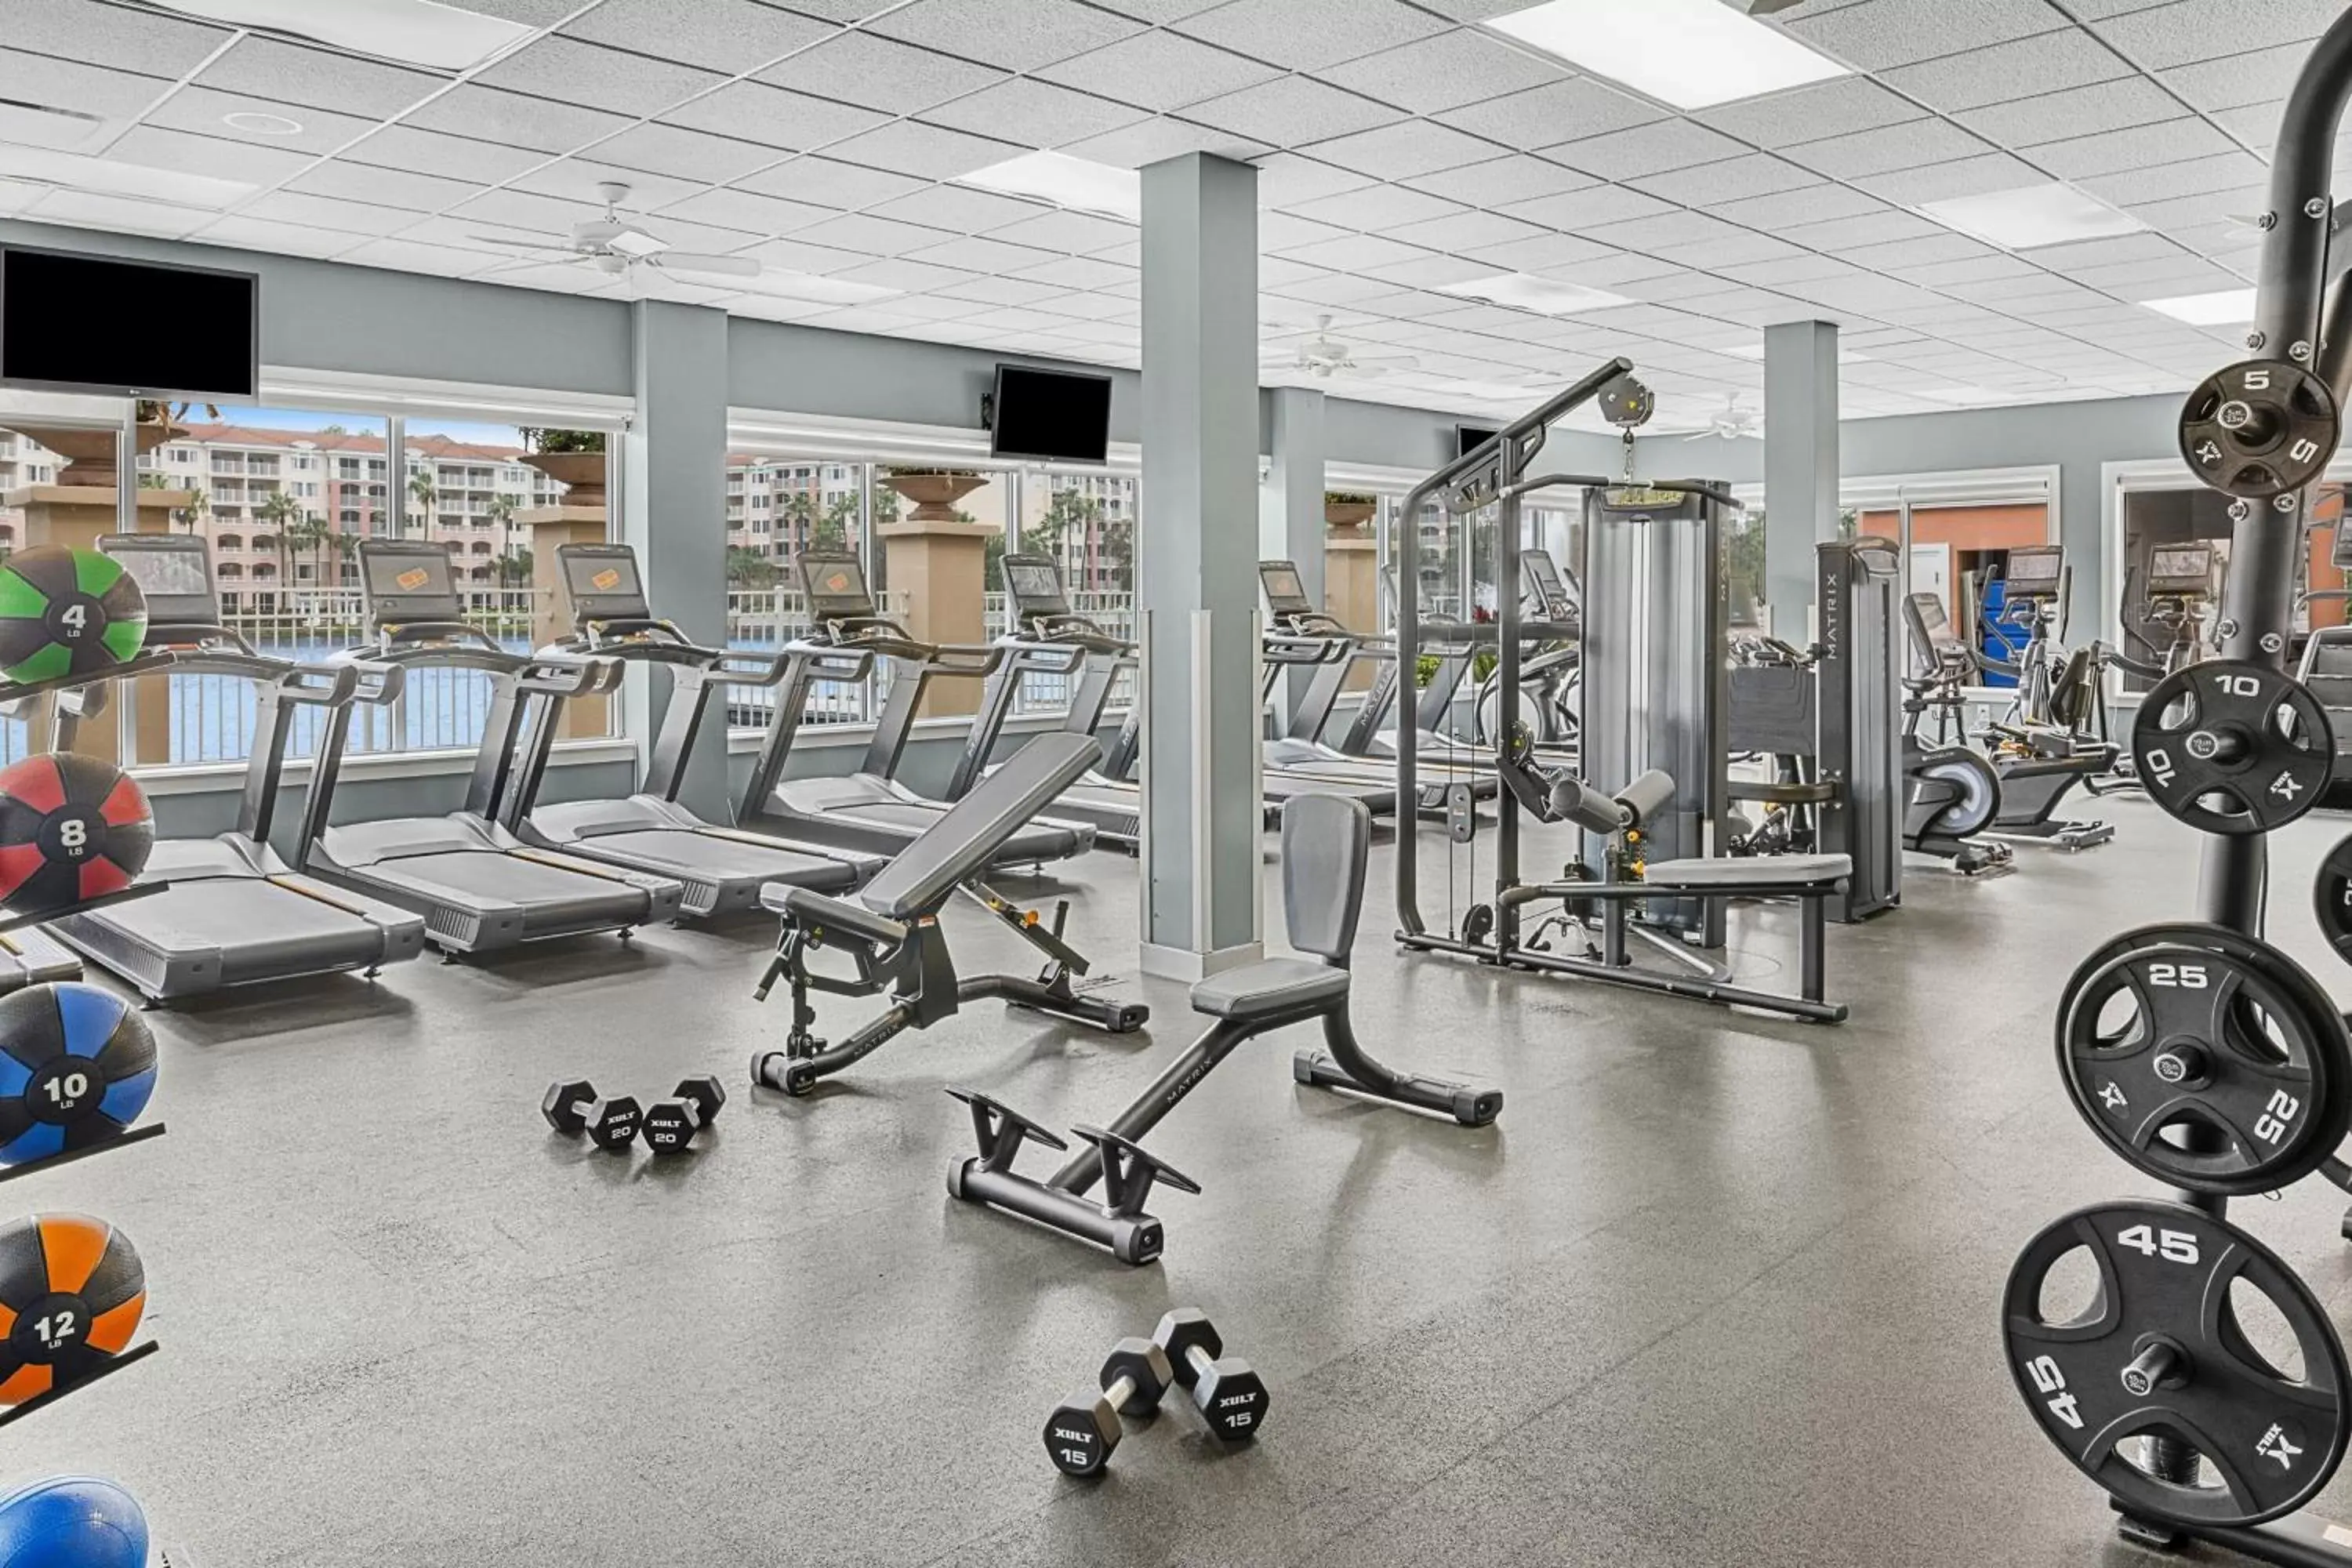 Fitness centre/facilities, Fitness Center/Facilities in Marriott's Grande Vista